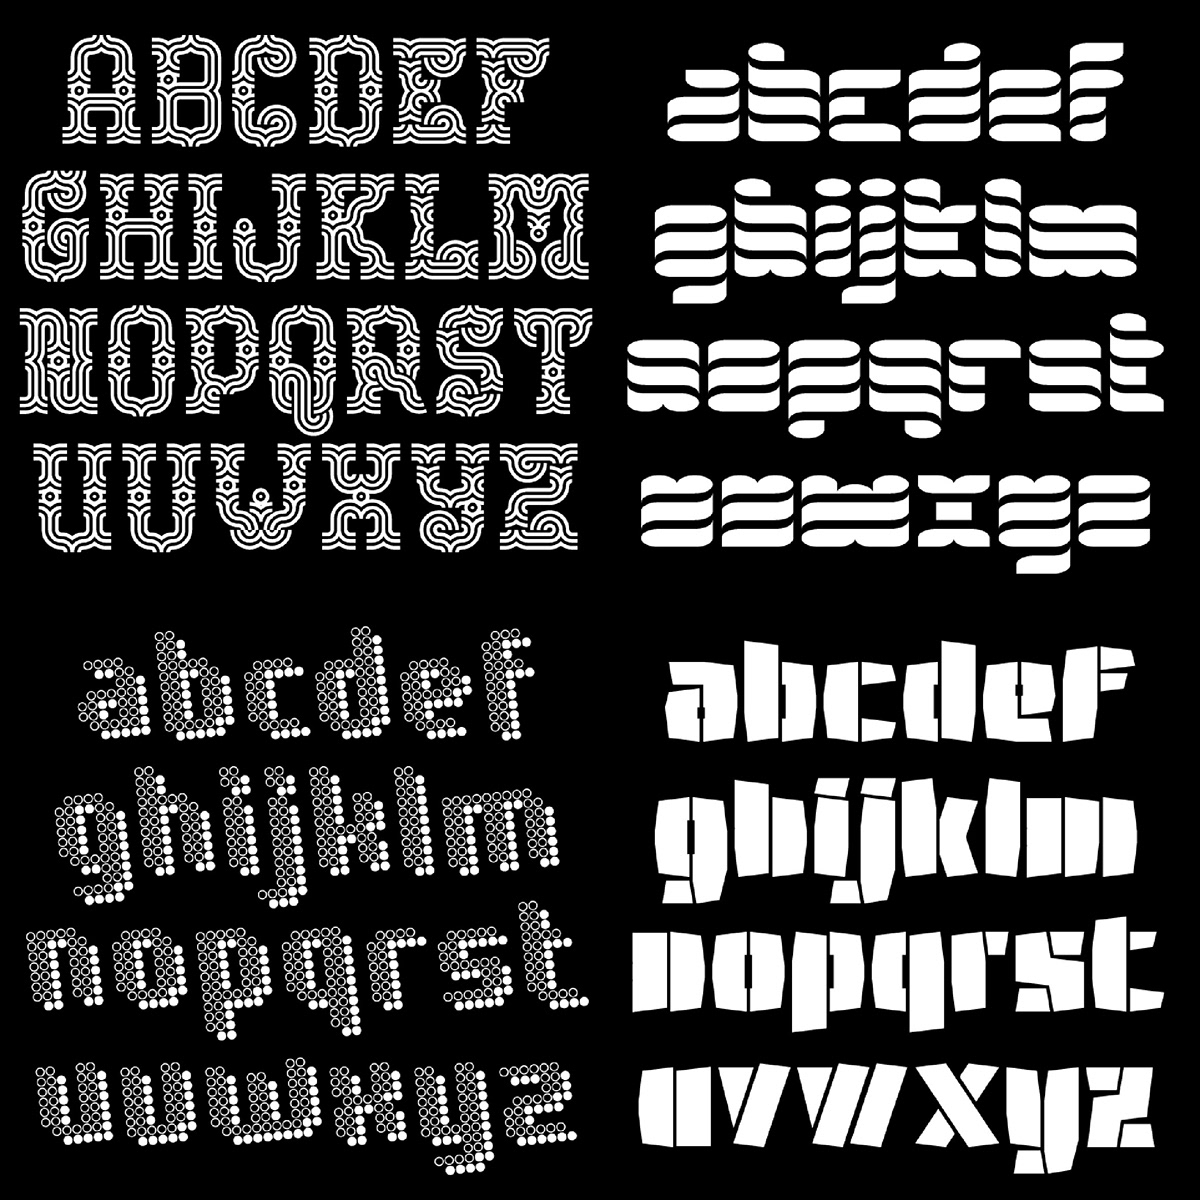 type design font Typeface modular fontstruct alphabet ABC letters alphabets